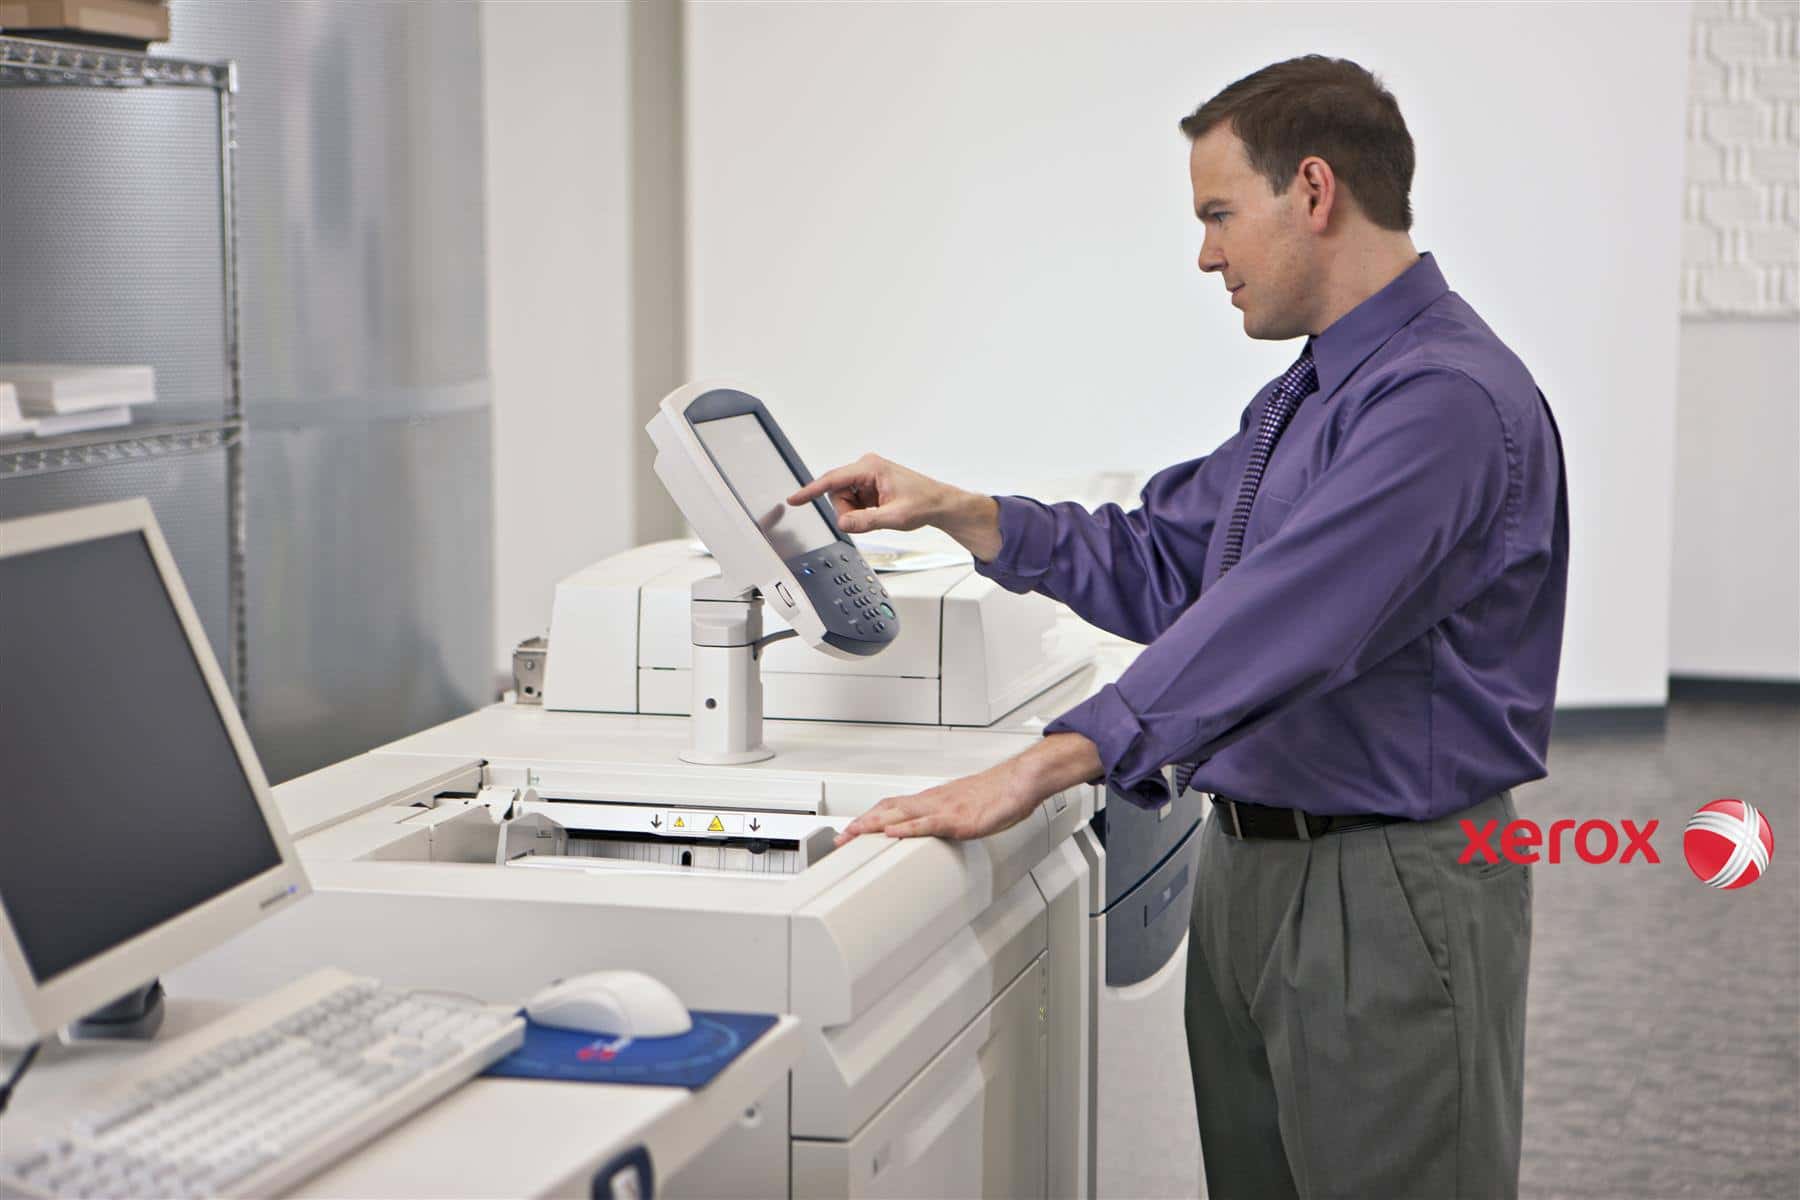 Video copying. Оргтехника для офиса. Принтер в офисе. Печатная техника. Принтер Xerox в офисе.